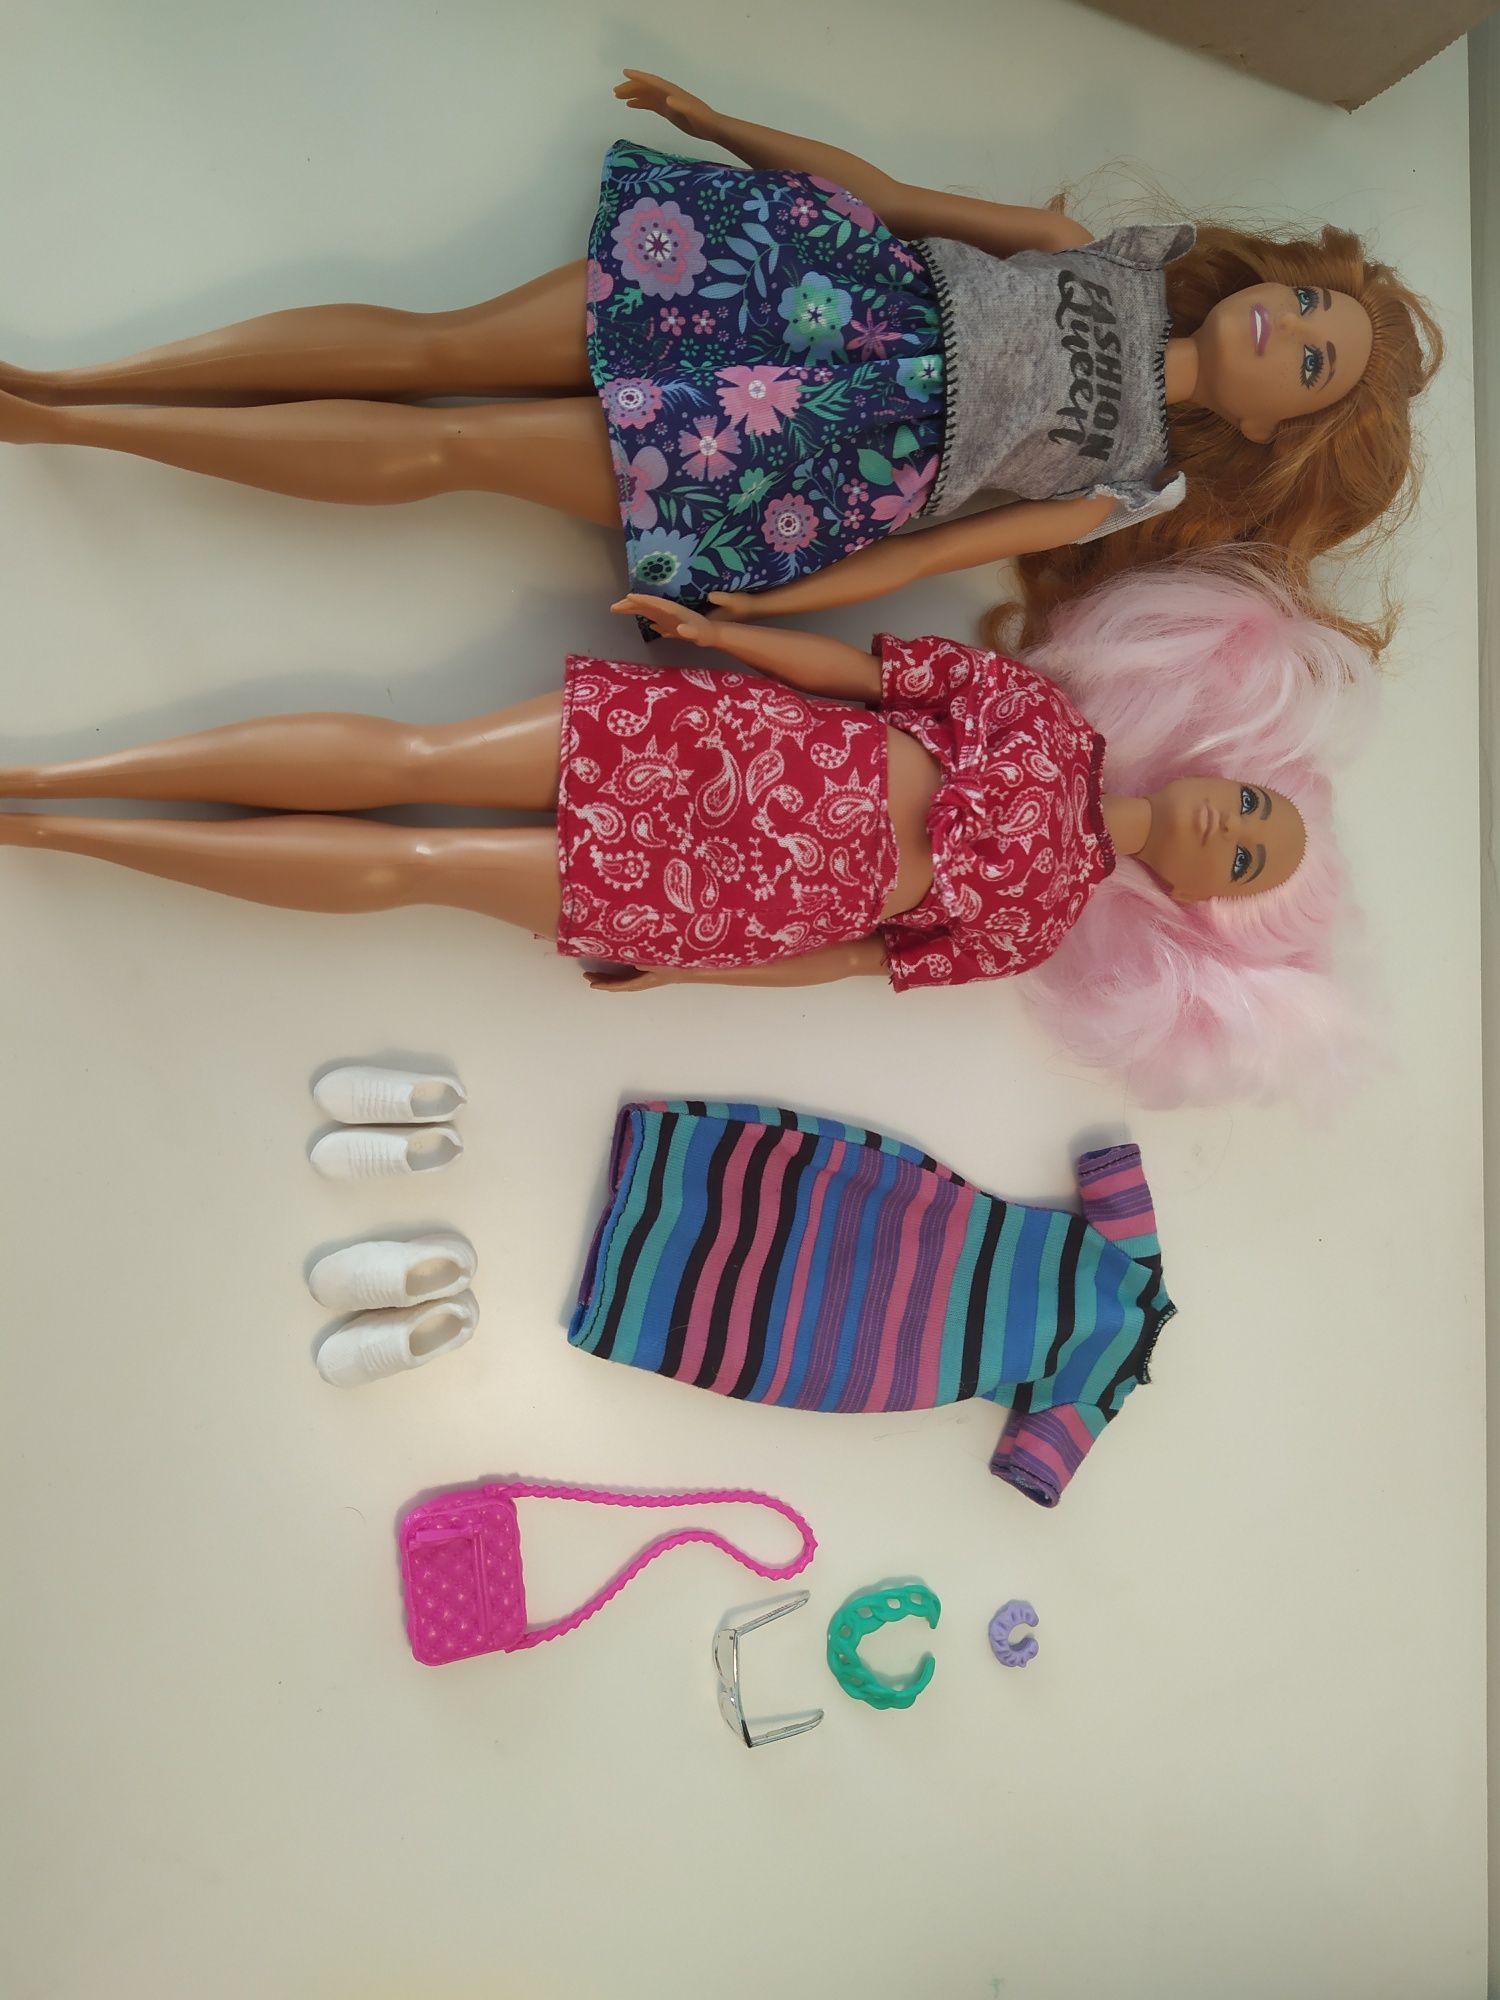 Używane lalki Fashion oraz akcesoria